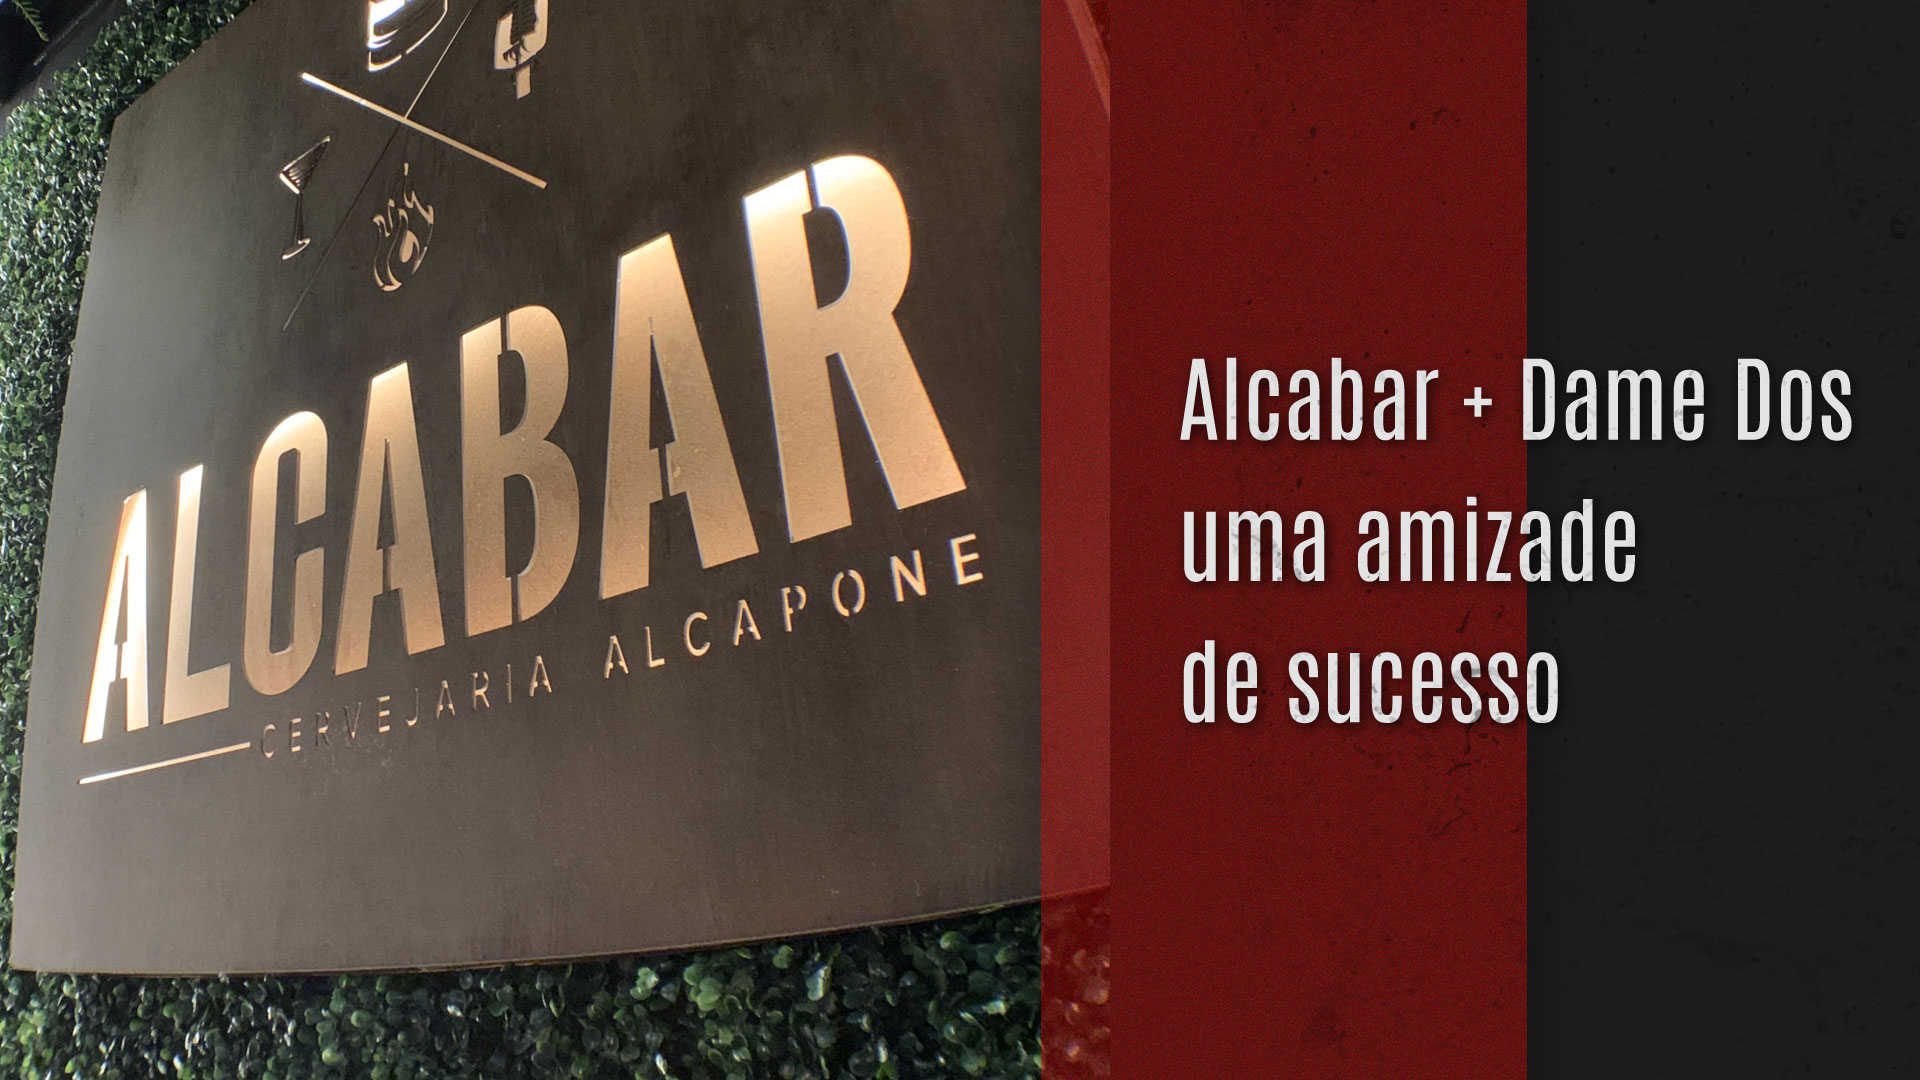 You are currently viewing Alcabar + Dame Dos, uma amizade de sucesso